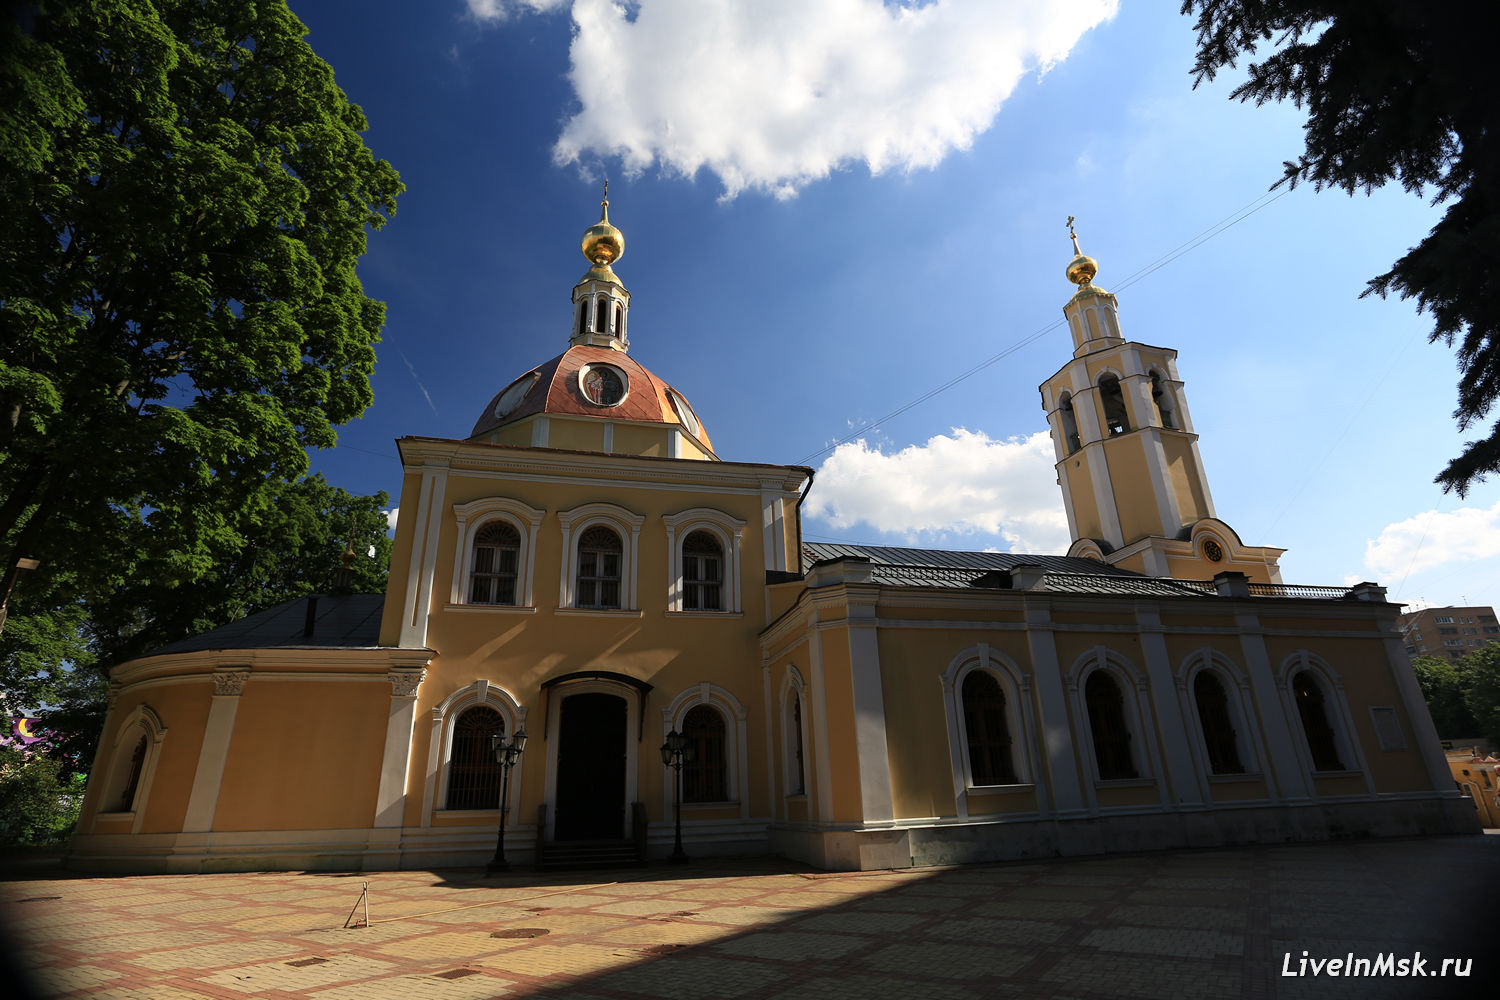 Всехсвятская церковь на Соколе, фото 2016 года